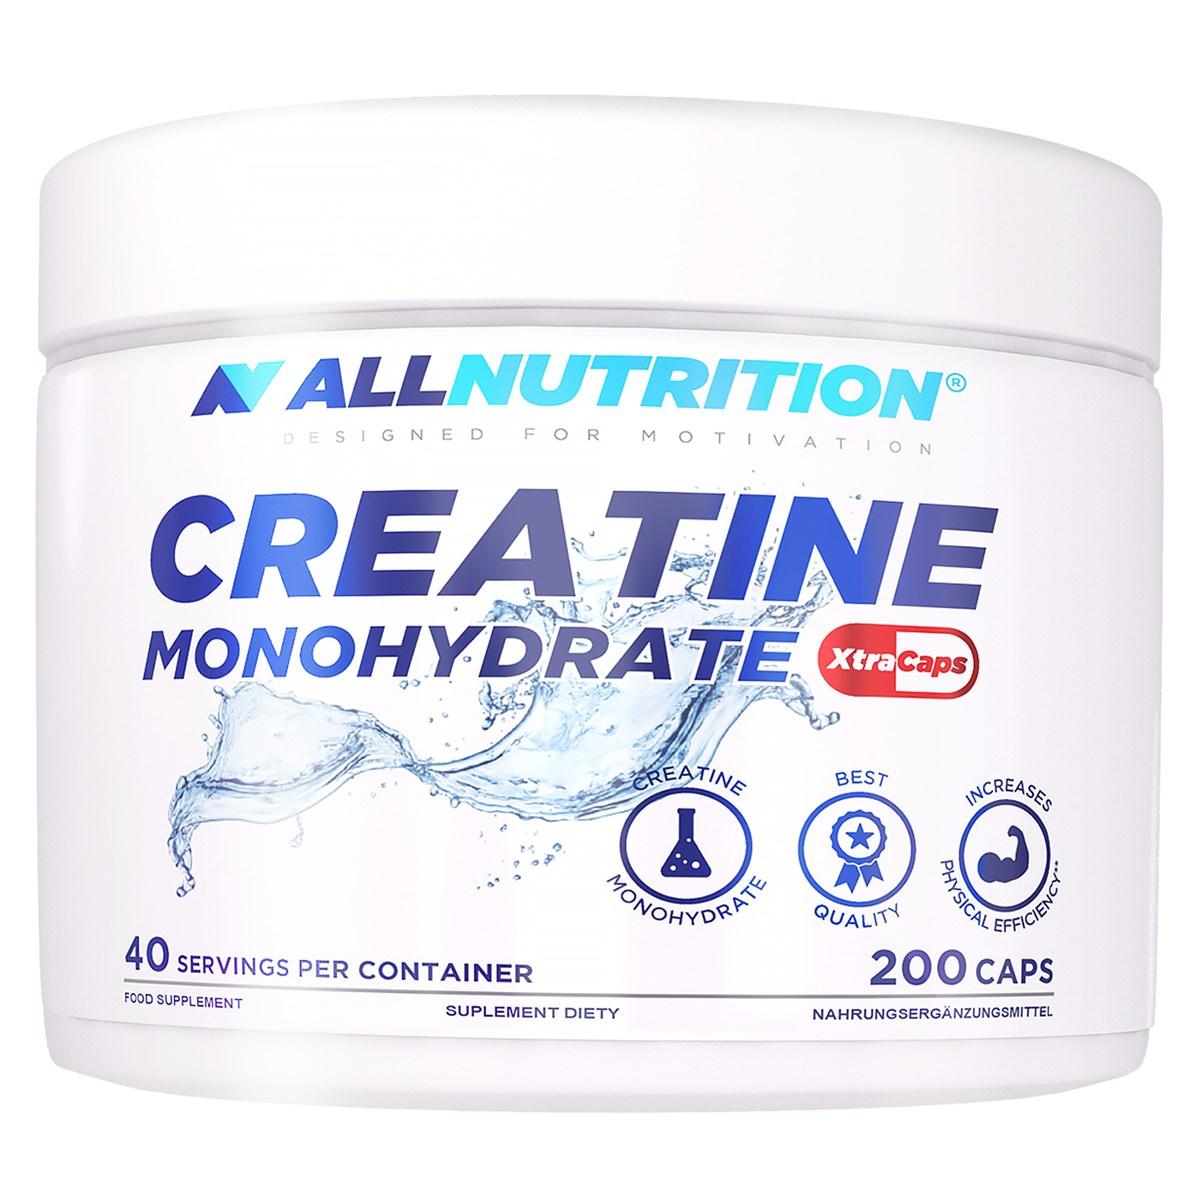 Креатин моногидрат AllNutrition Creatine Monohydrate Xtra Caps (400 капс) оллнутришн,  мл, AllNutrition. Креатин моногидрат. Набор массы Энергия и выносливость Увеличение силы 